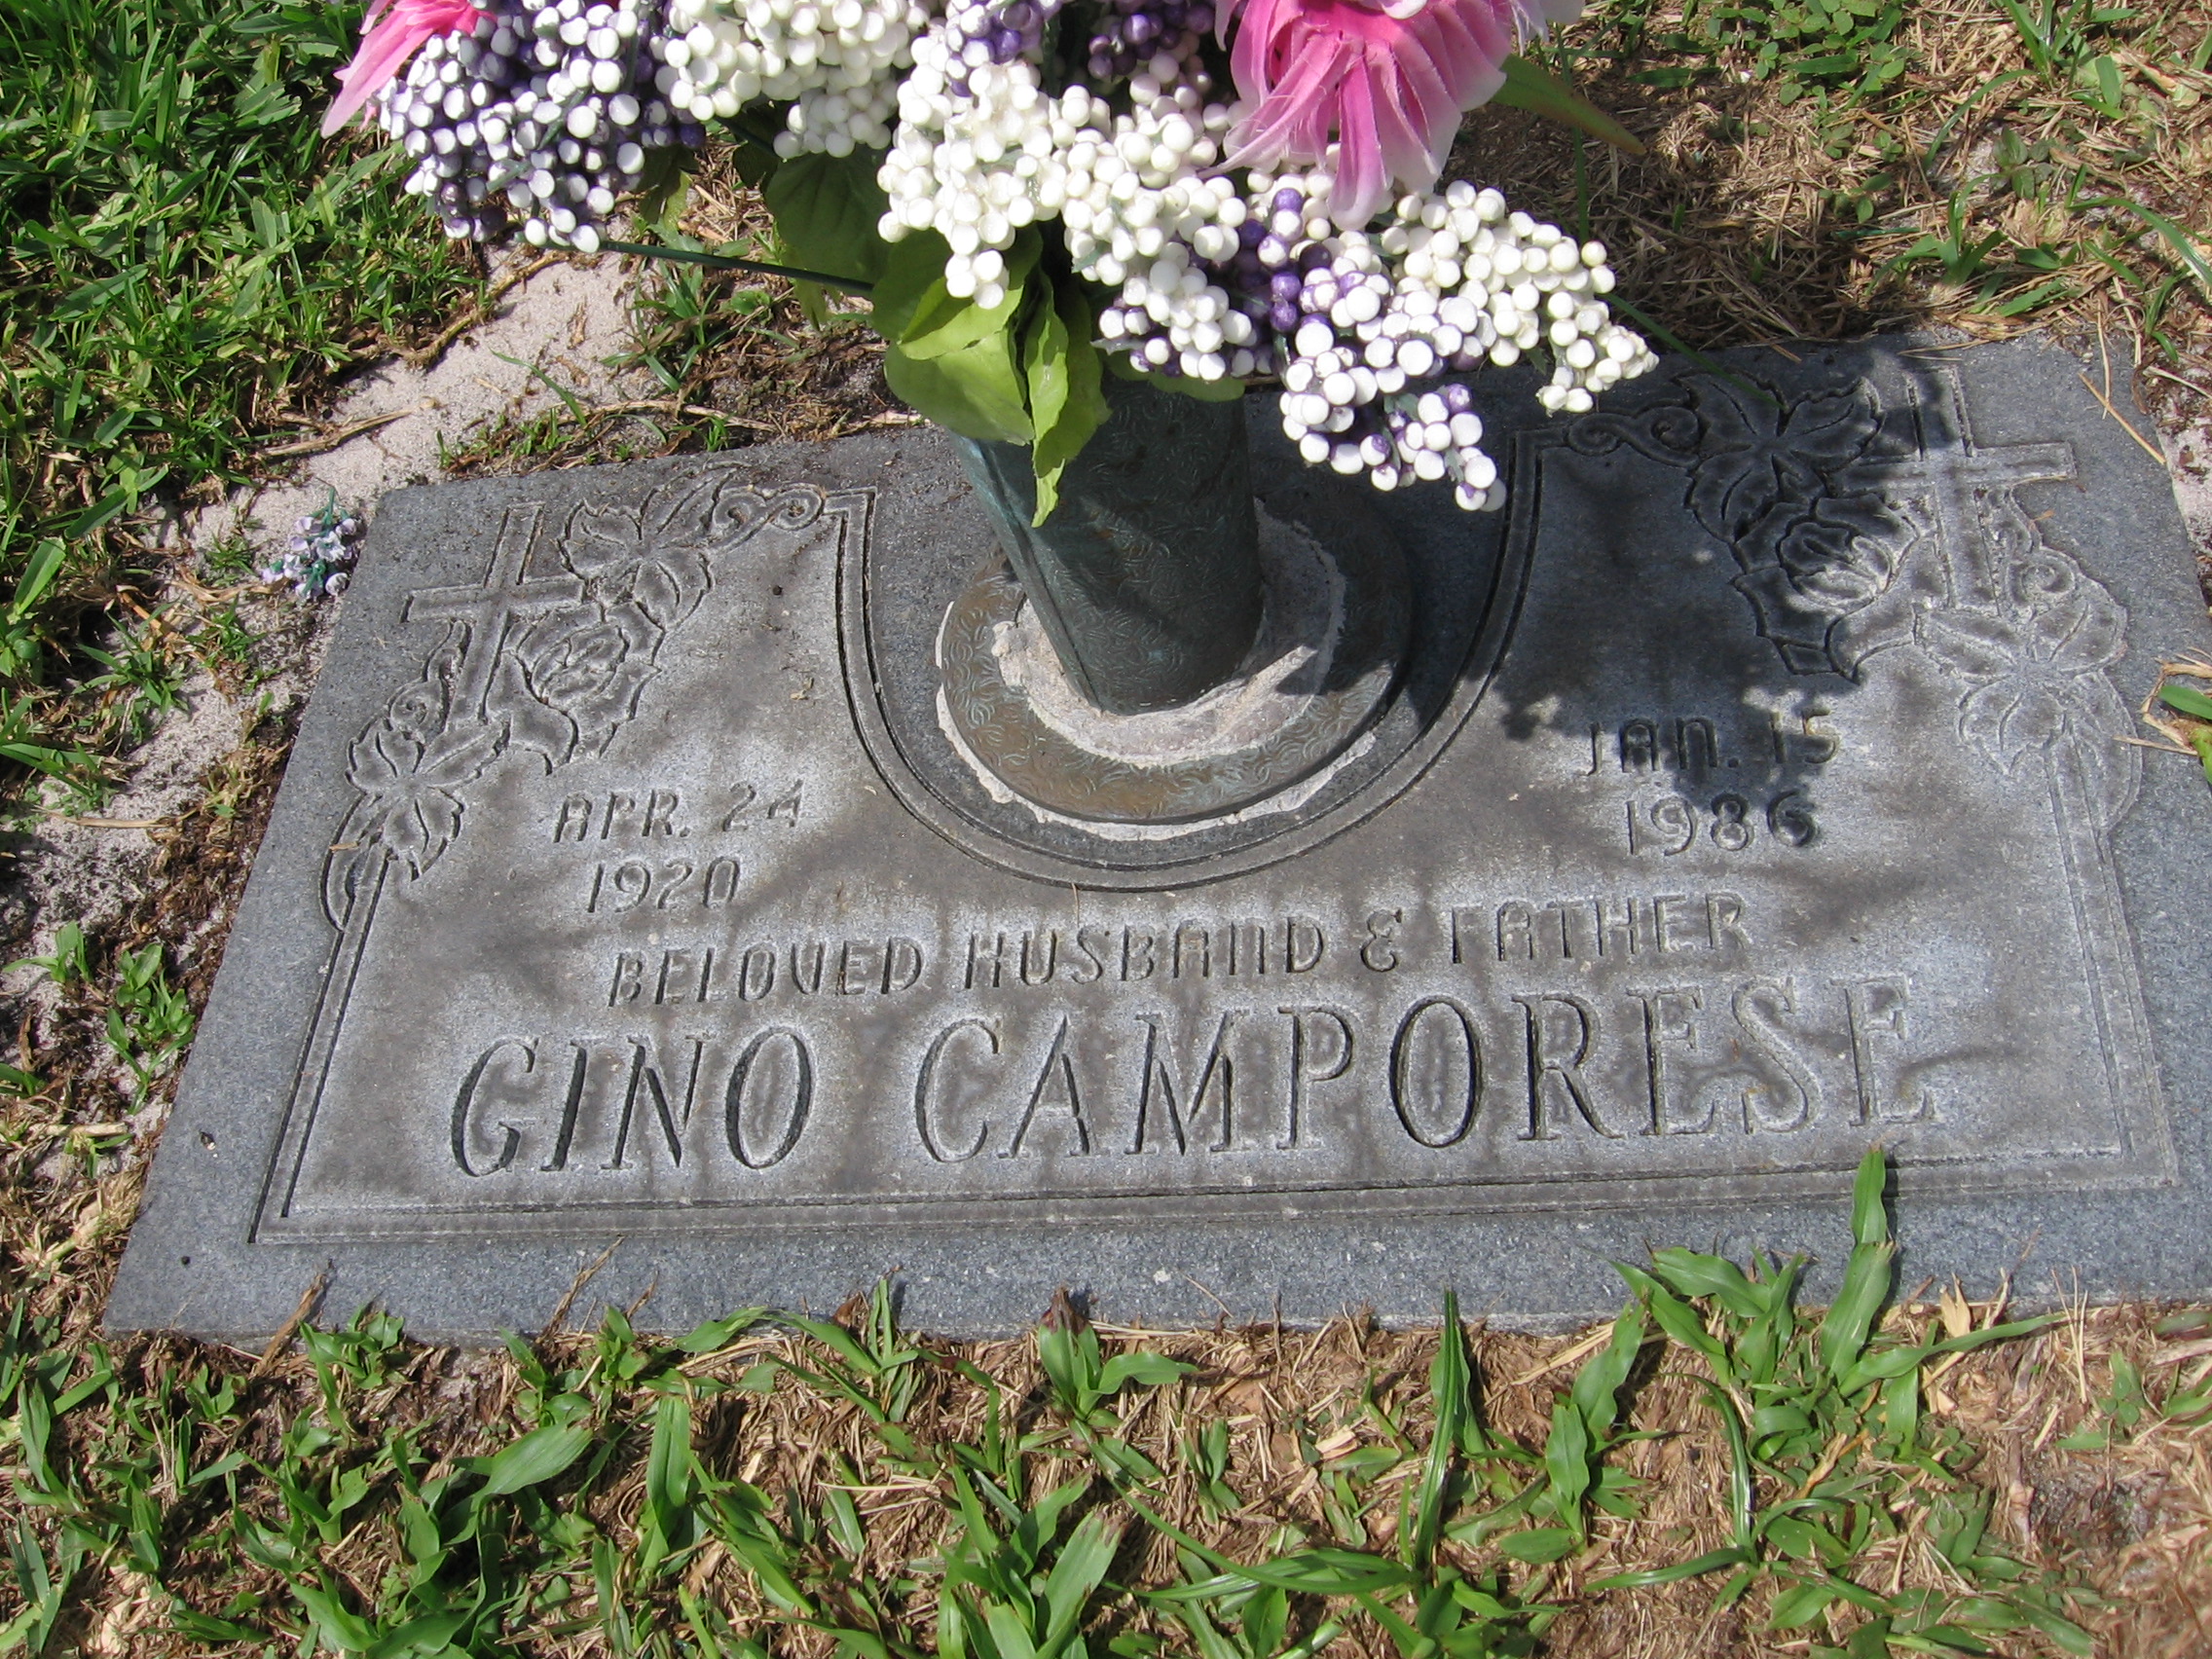 Gino Camporese